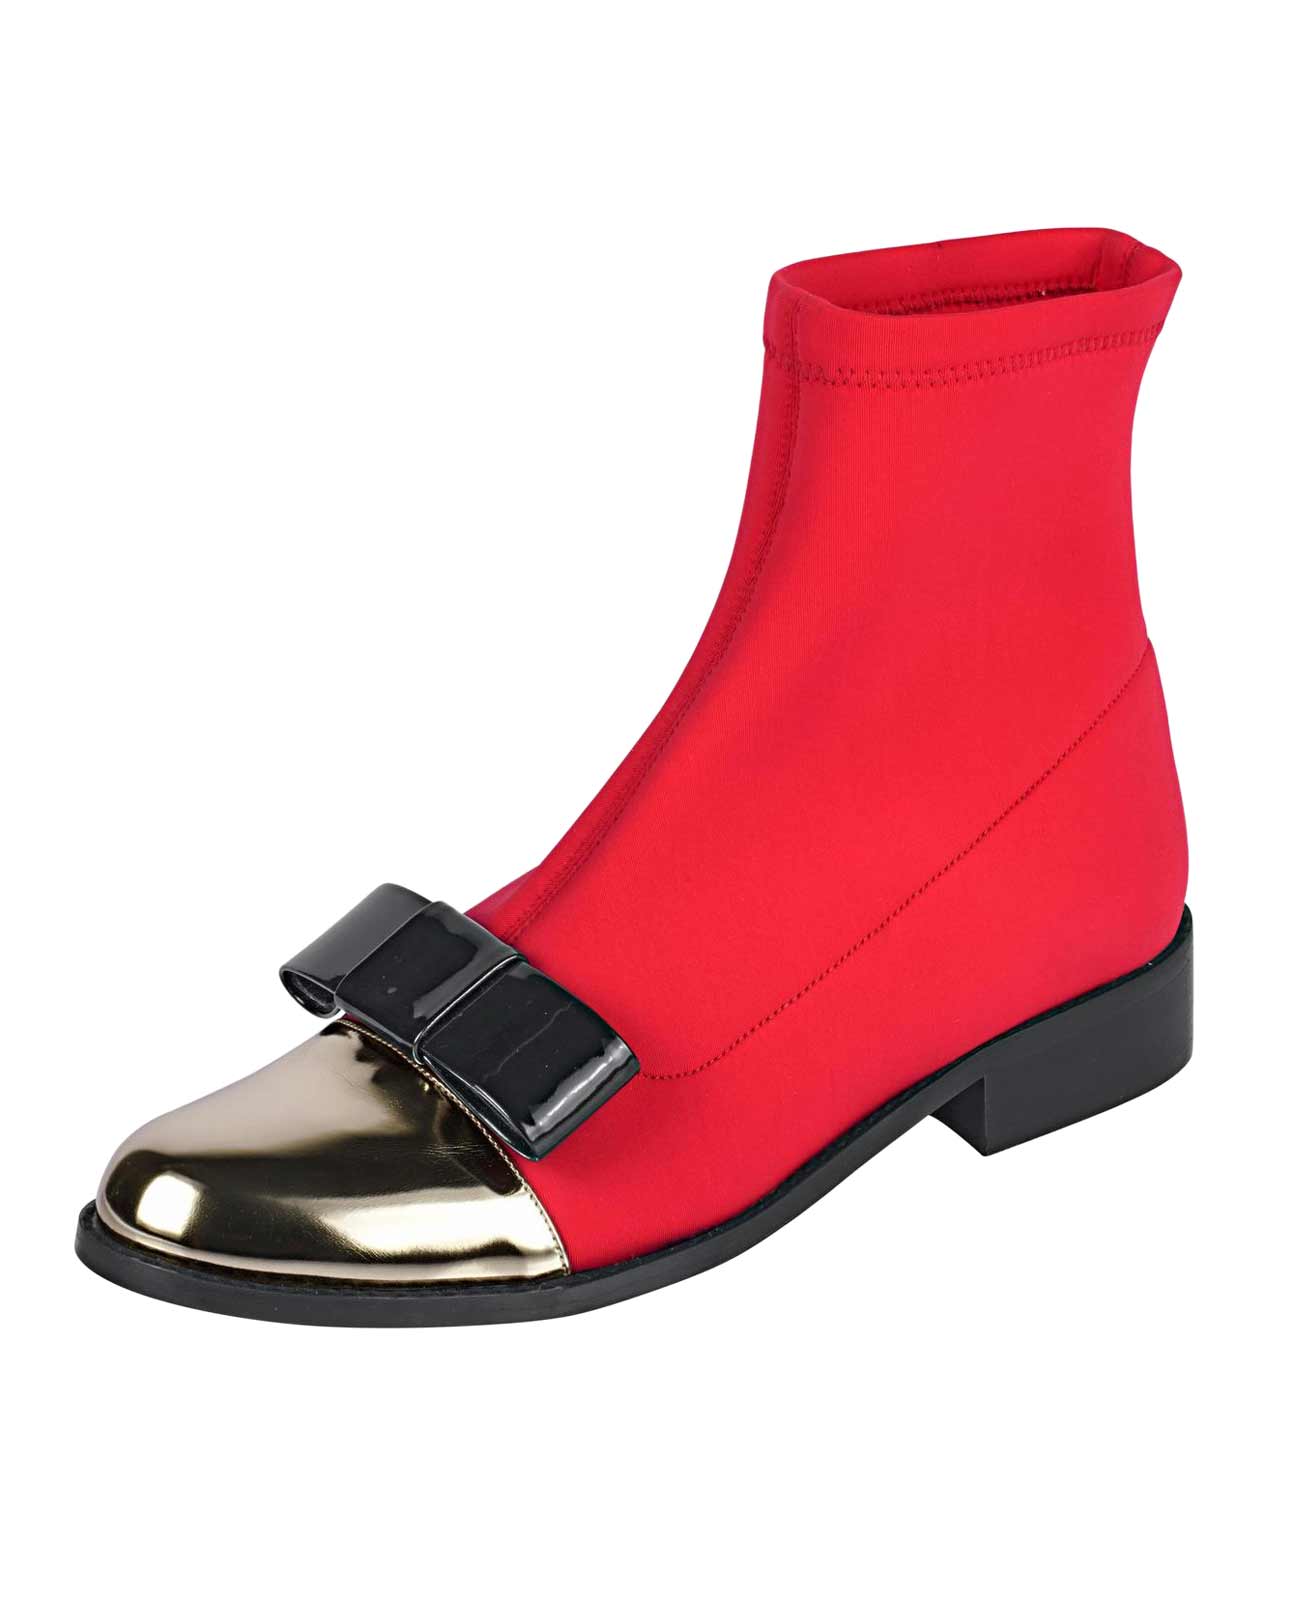 Strečové členkové topánky HEINE, červeno-zlaté